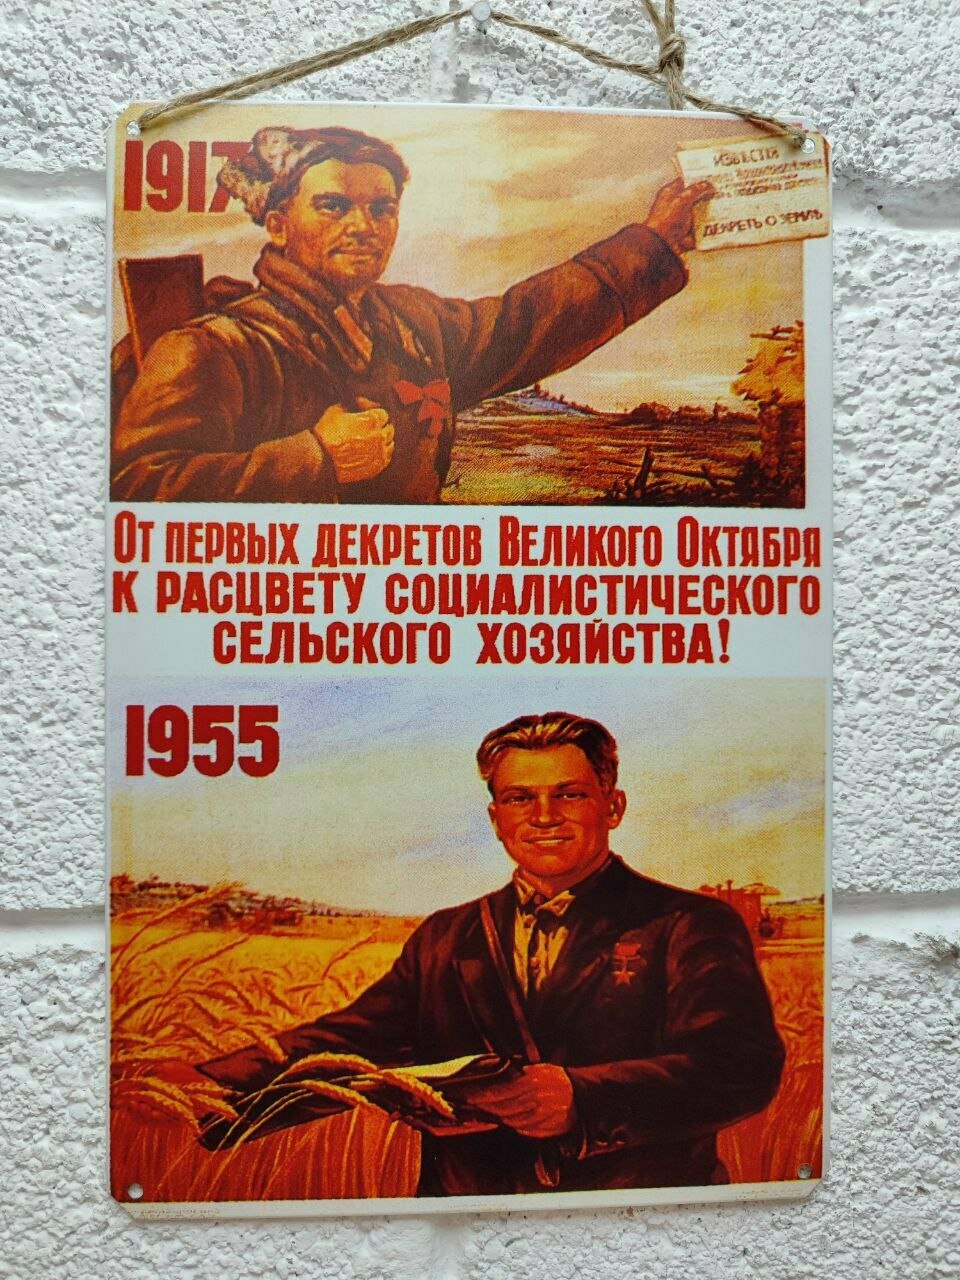 К расцвету социалистического сельского хозяйства советский постер 20 на 30 см, шнур-подвес в подарок